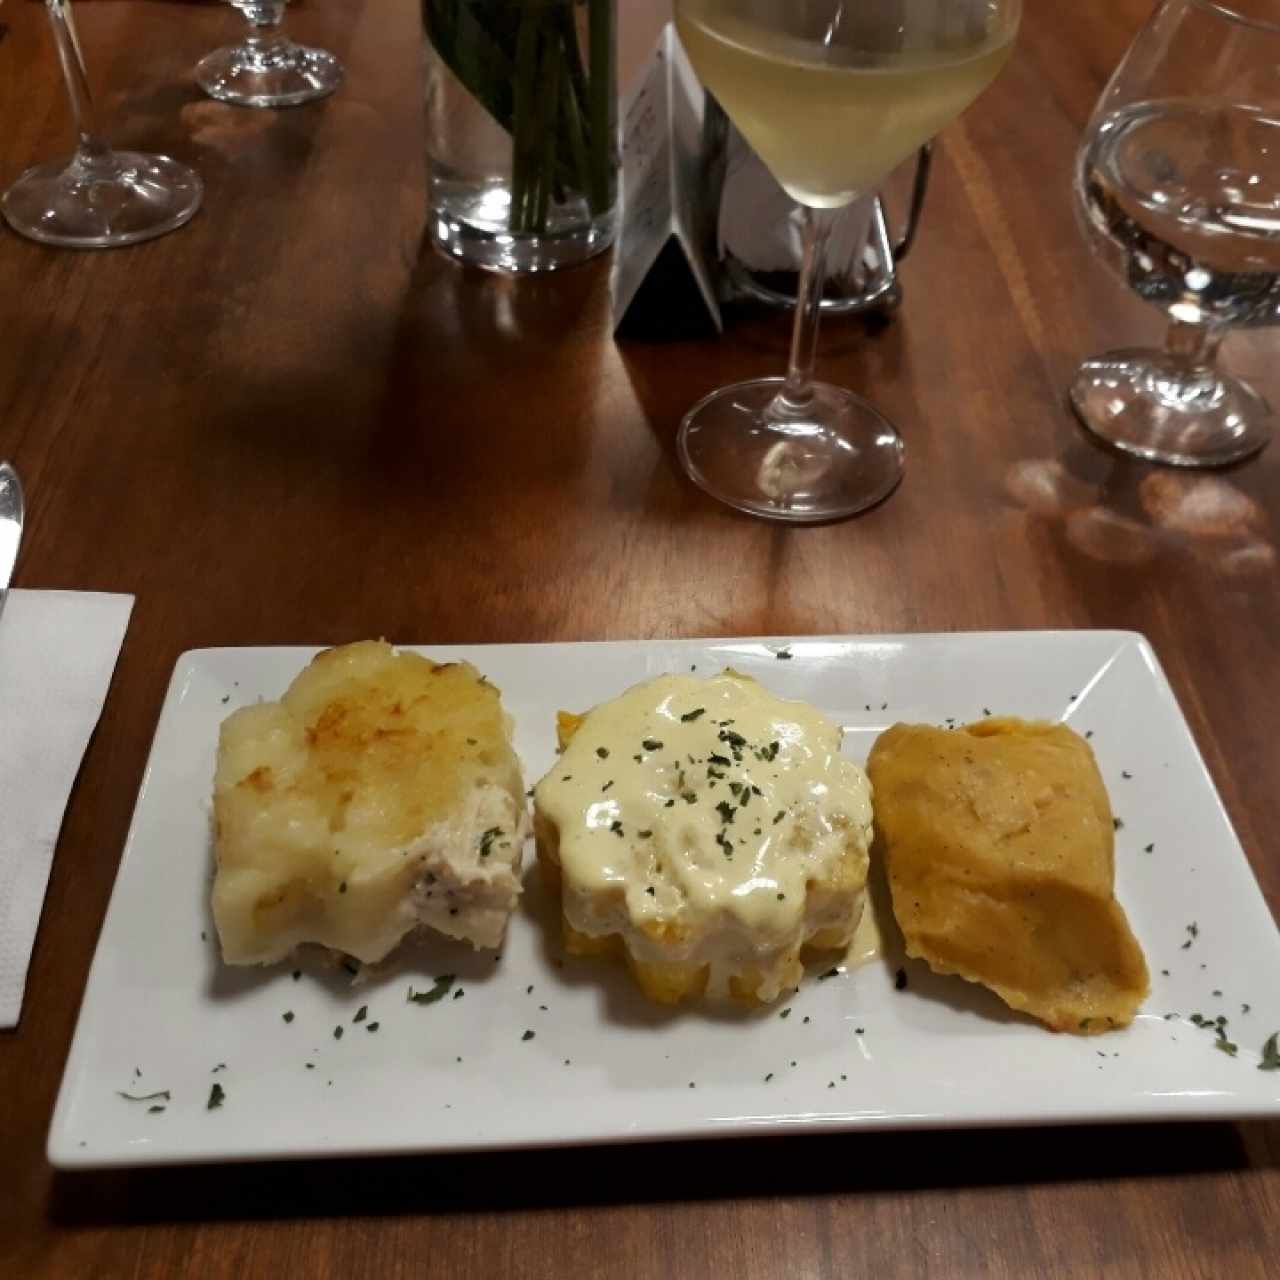 Pastelito de Yuca con pollo queso manchego y salsa blanca. Entrada de Cena de Año Nuevo. Tamal de pollo. Mini Causa Peruana con camarón, alioli y perejil